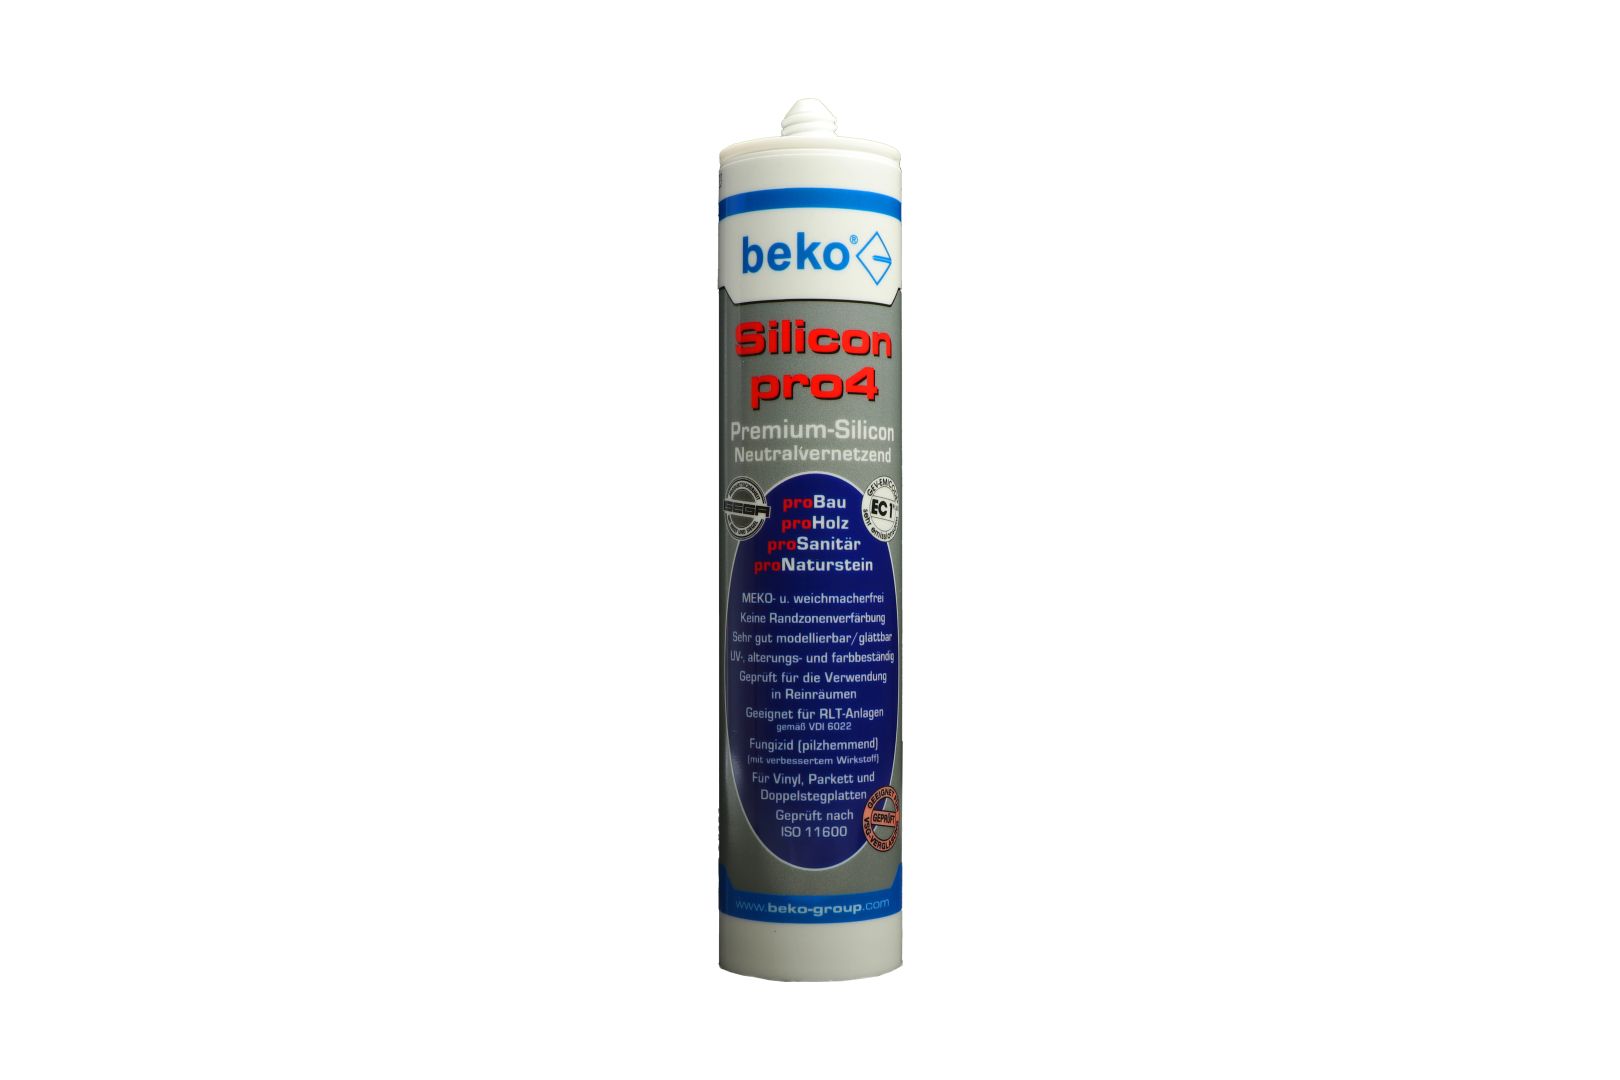 beko Silicon pro4, Premium-Silicon, Silikon-Dichtstoff, neutralvernetzend, ockerbraun/rotbuche, 310 ml